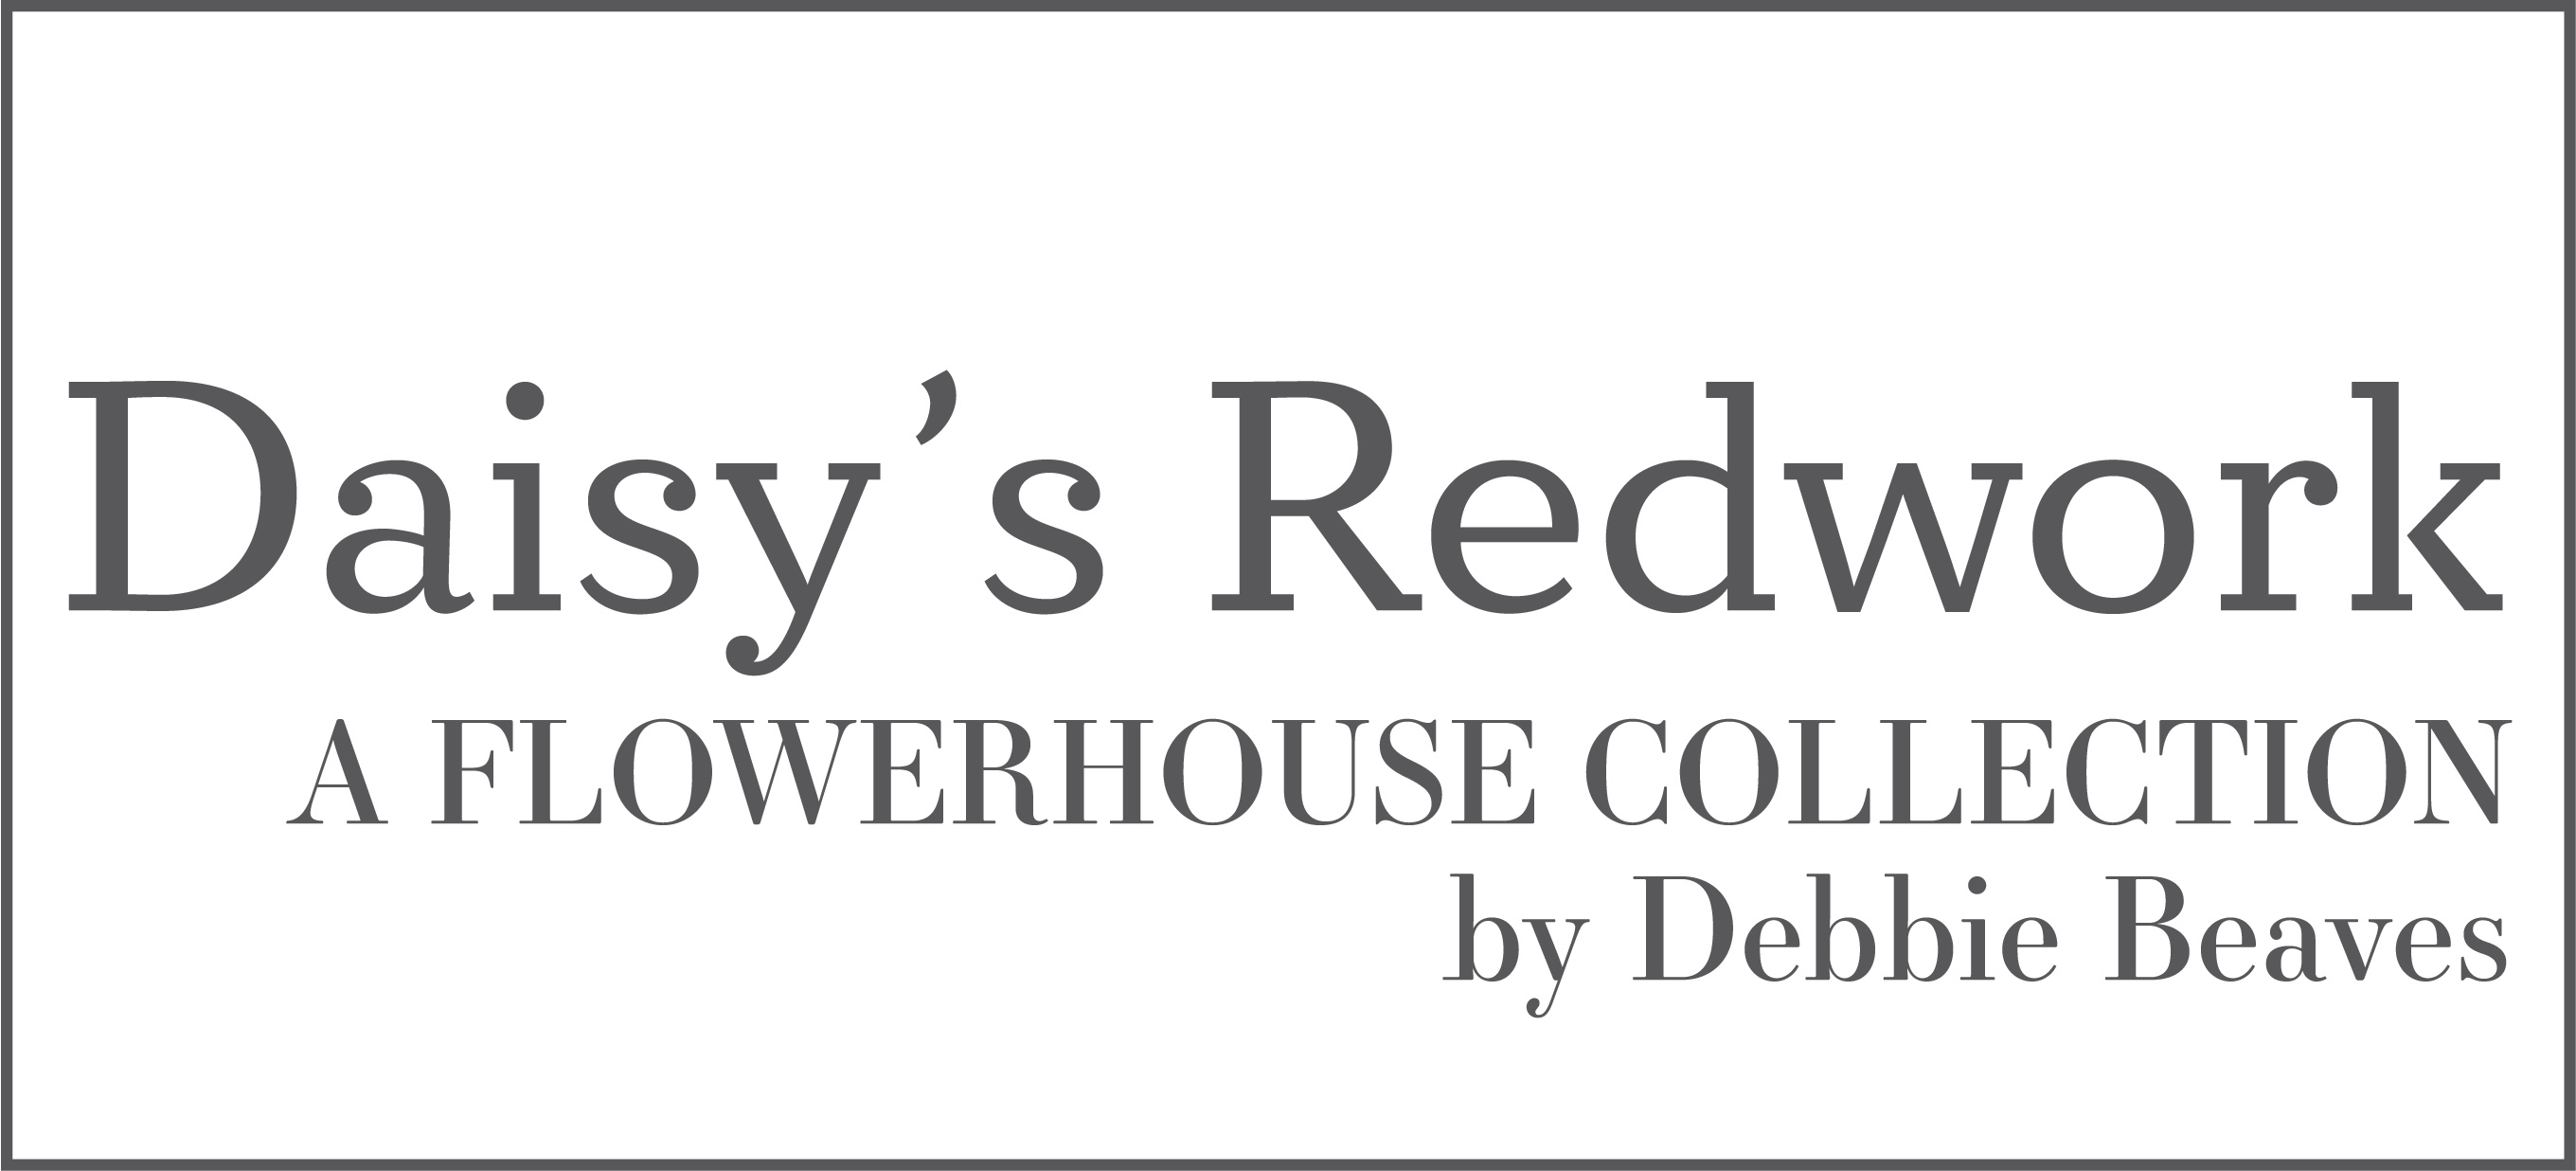 Pattern Flowerhouse: Daisy's Redwork